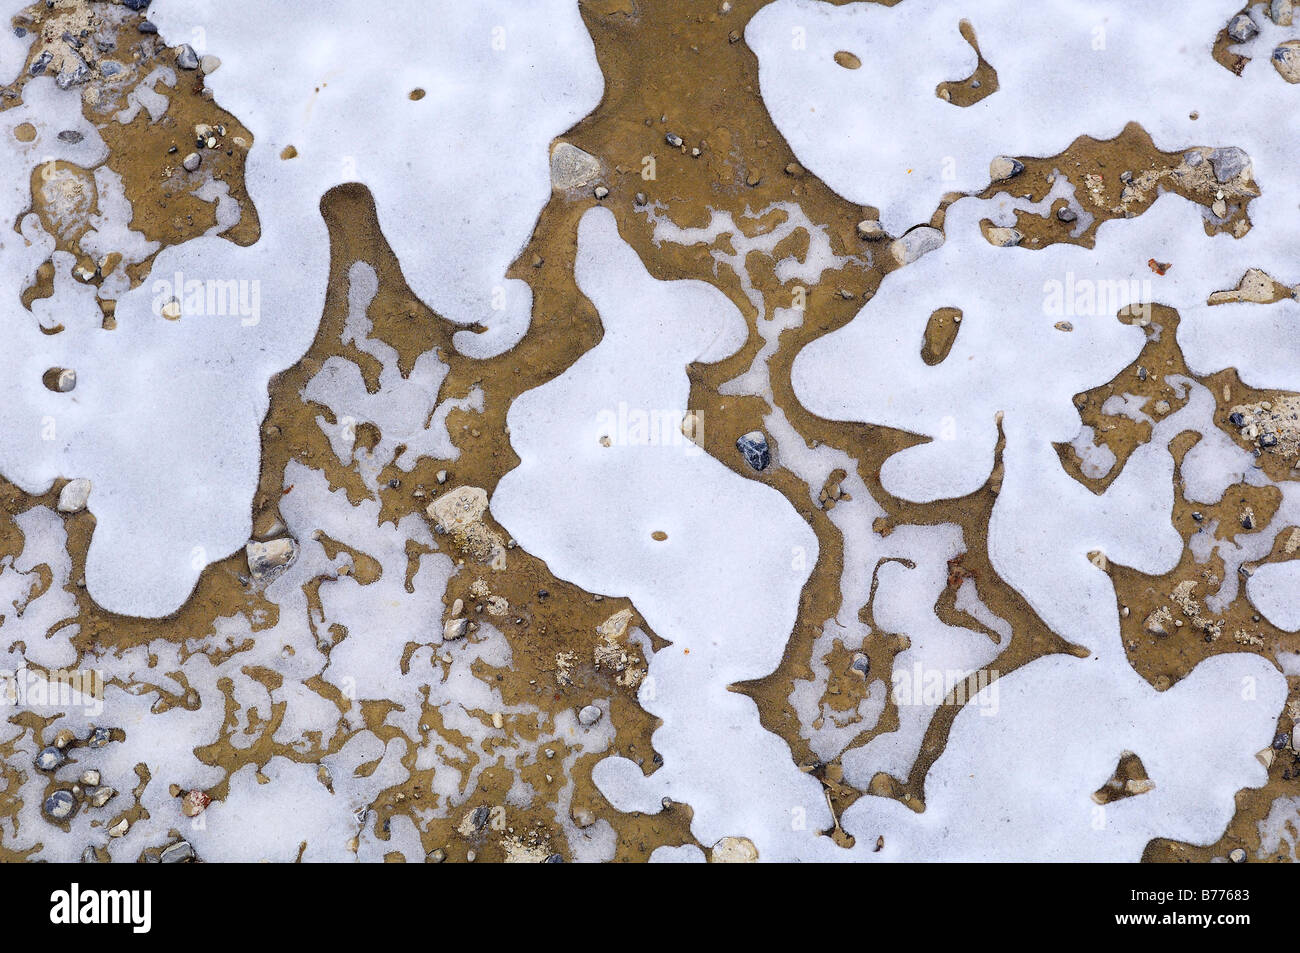 Différentes formes de glace dans une flaque, Bavaria, Germany, Europe Banque D'Images